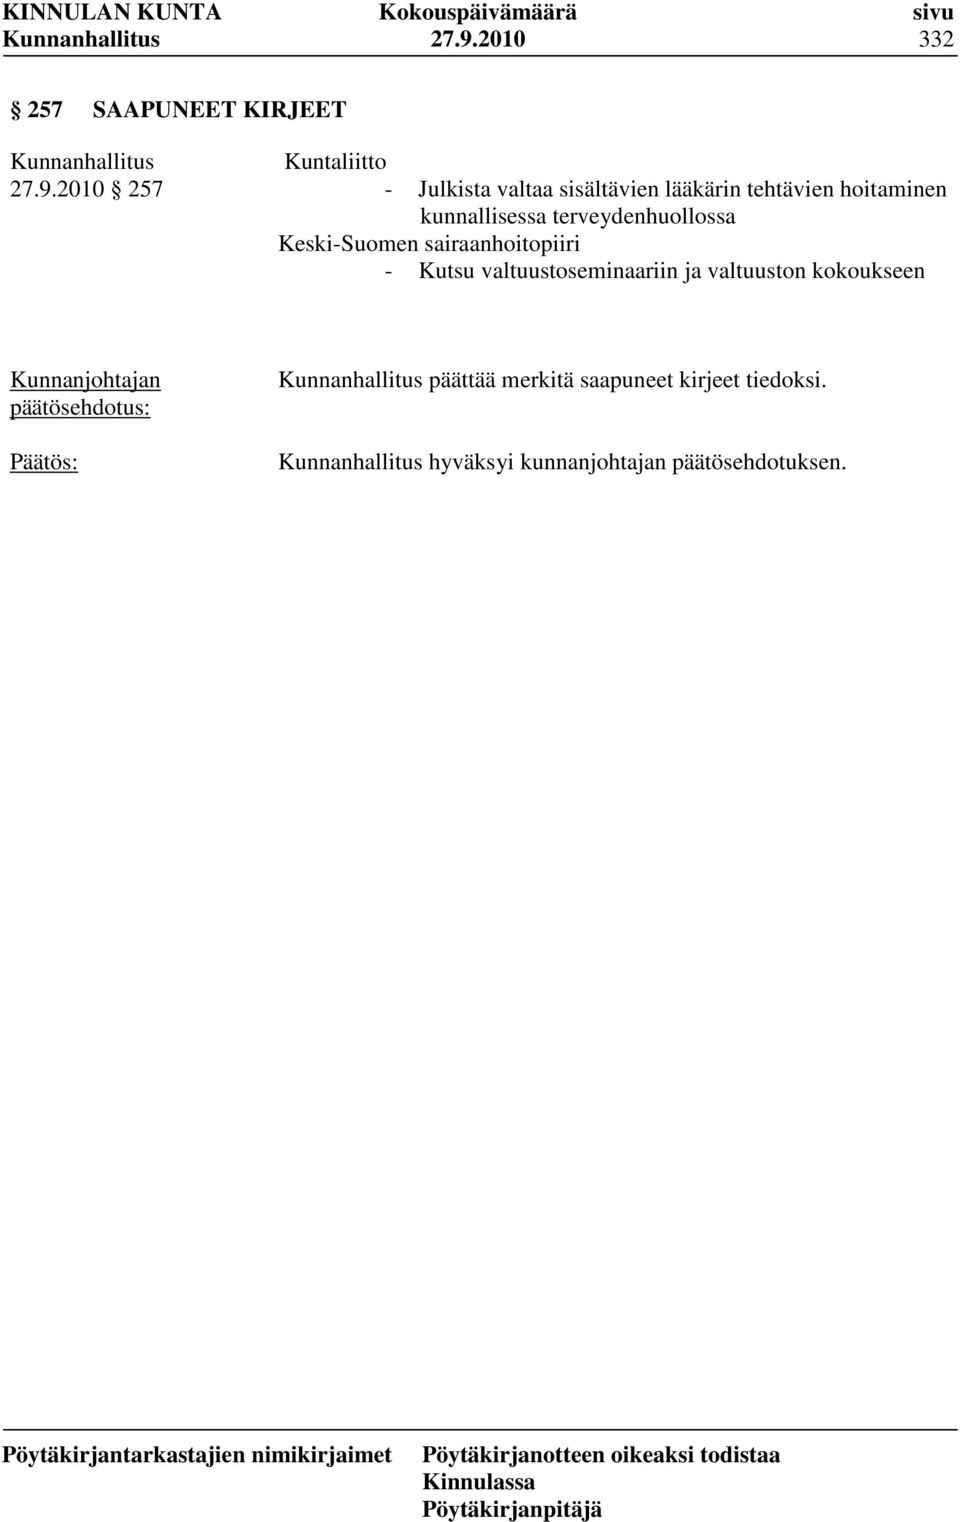 Keski-Suomen sairaanhoitopiiri - Kutsu valtuustoseminaariin ja valtuuston